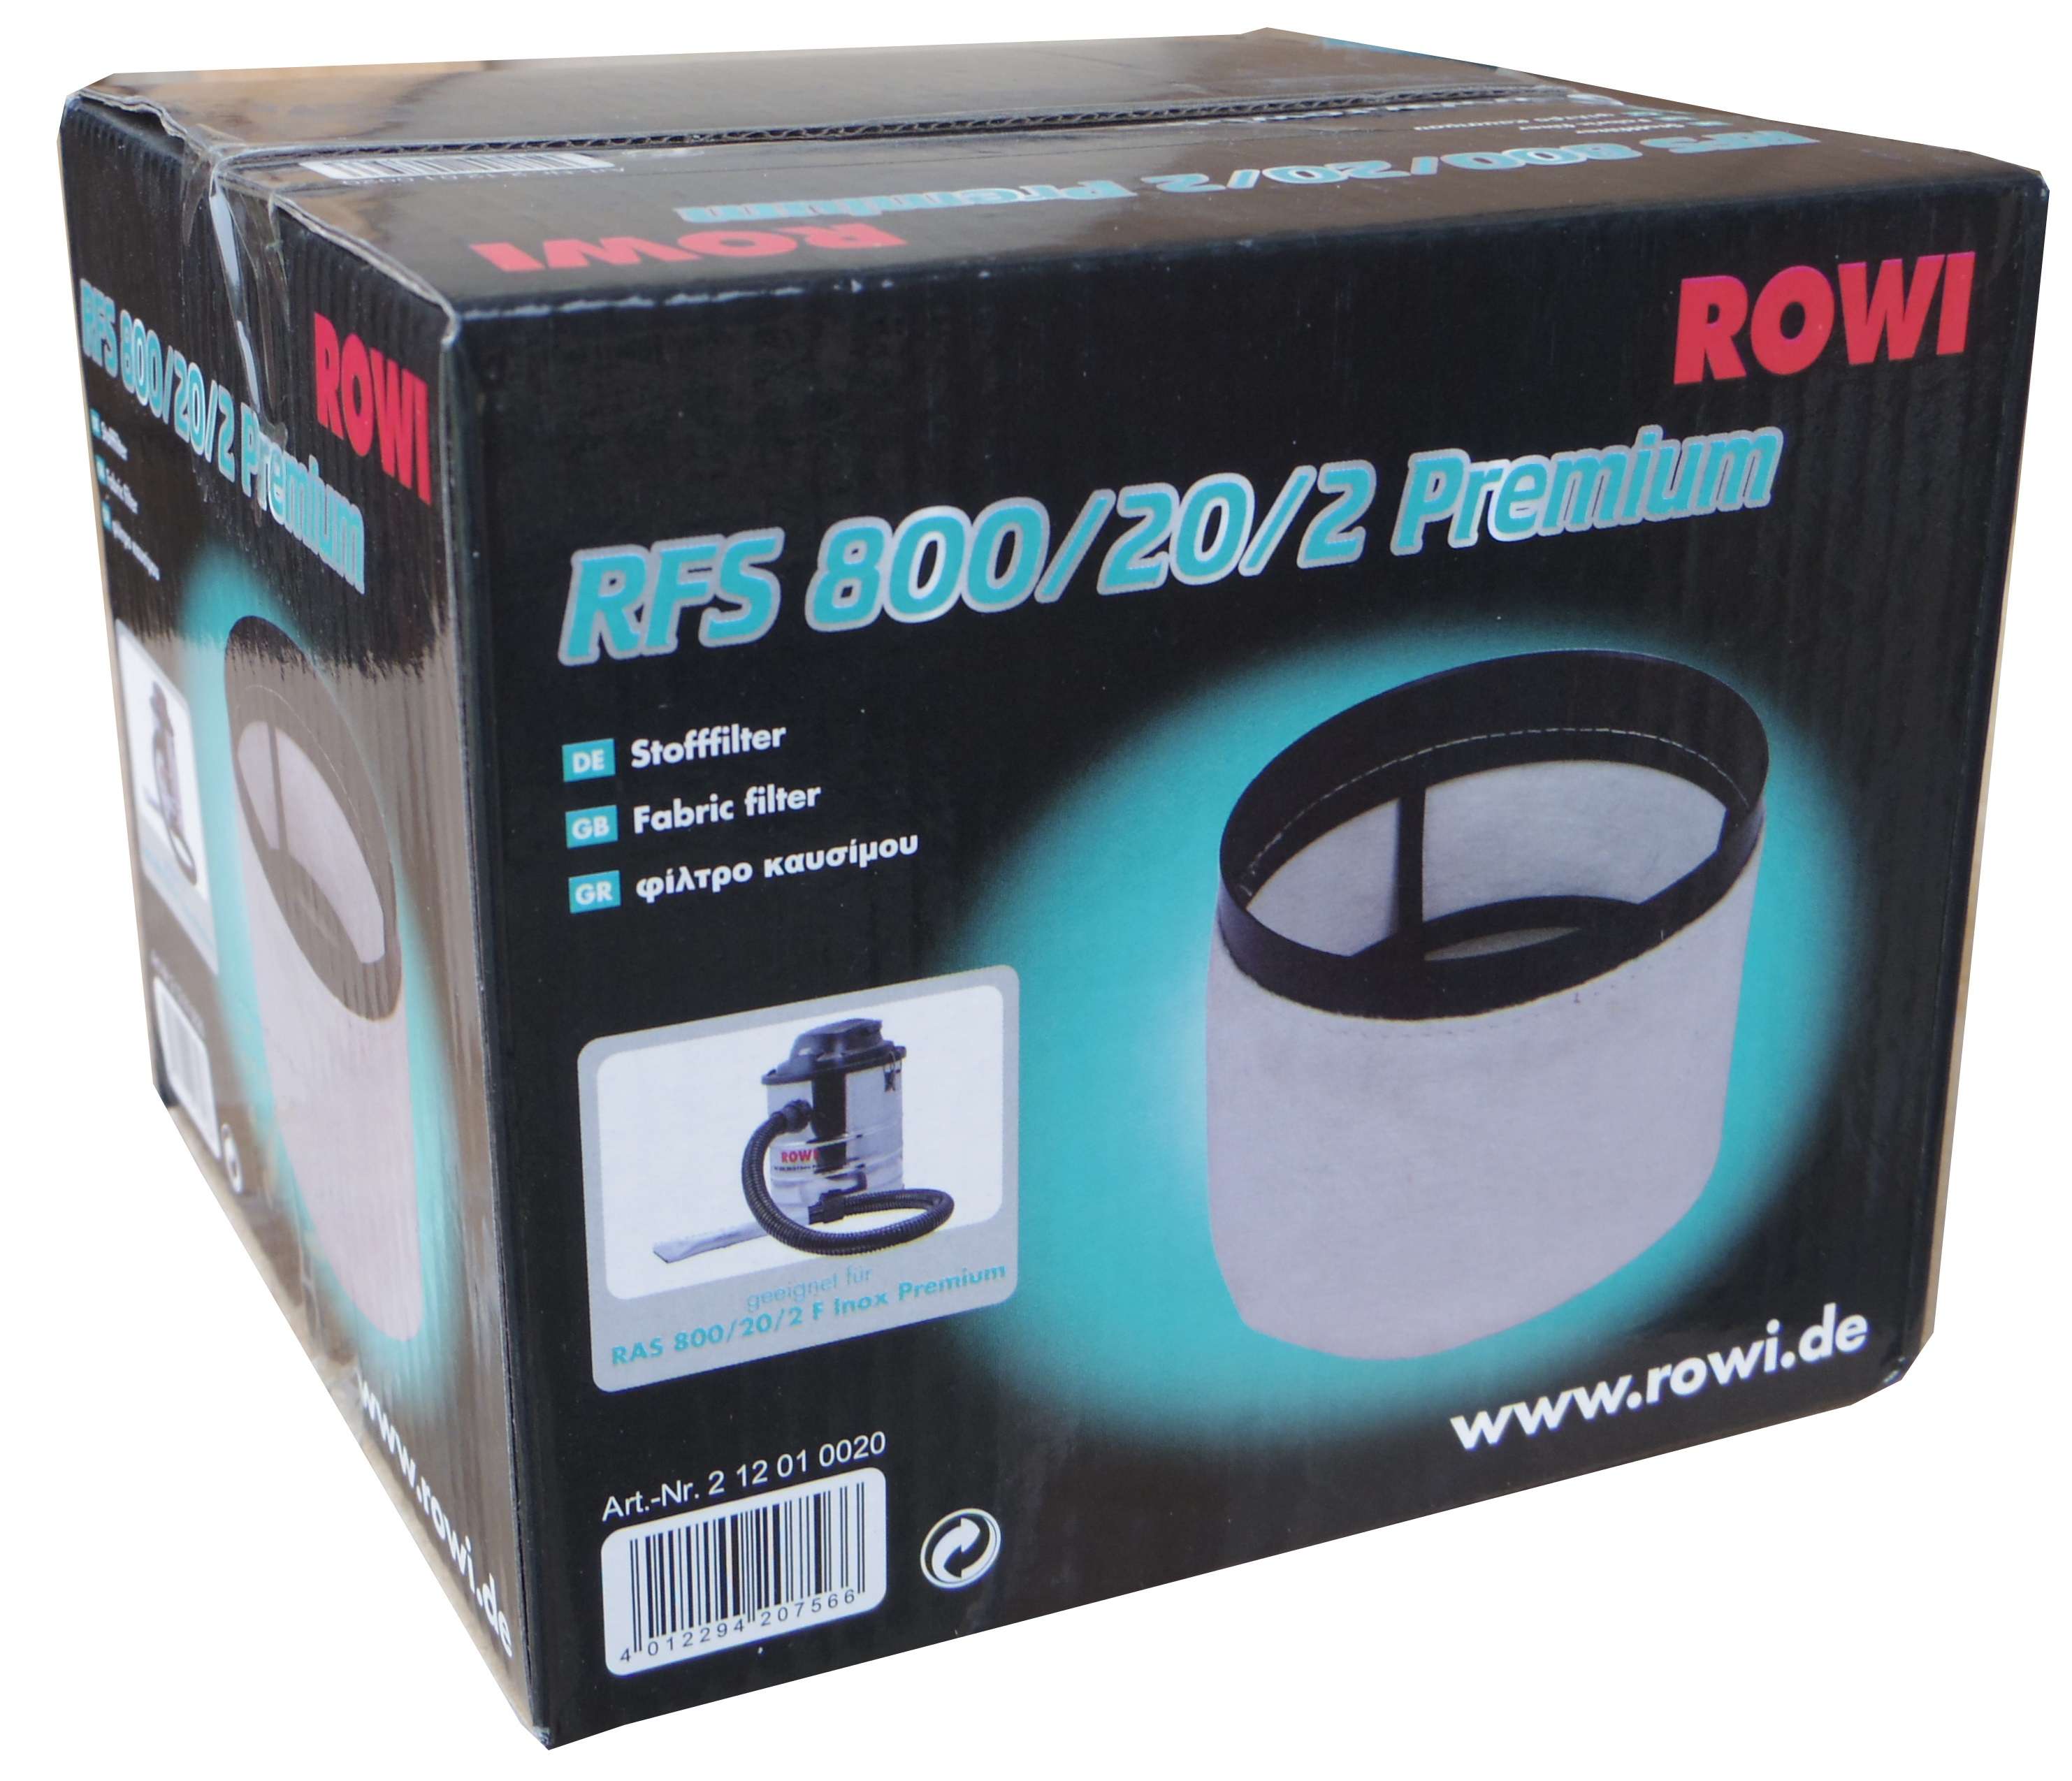 ROWI Ersatzfilter für RAS 800/20/2 F Aschesauger 800 W 20 Liter Inox Premium 